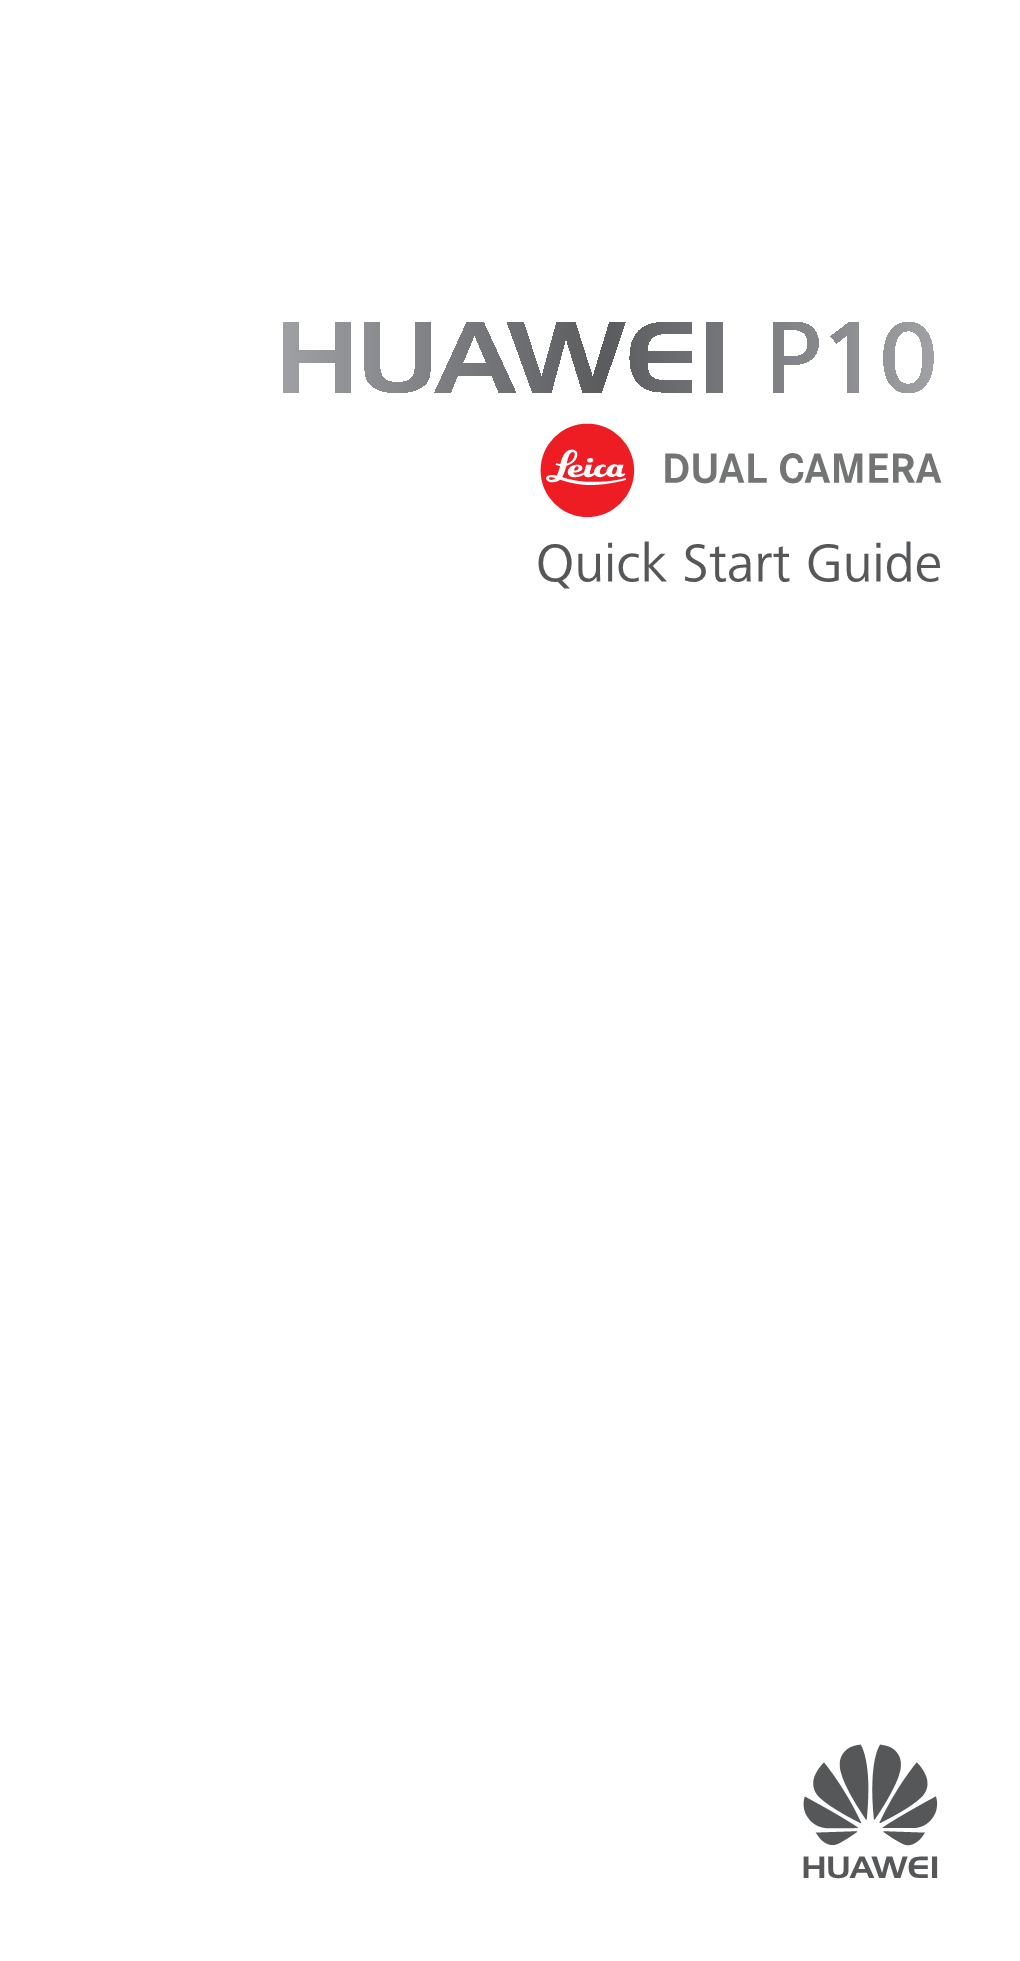 Huawei P10 Quick Start Guide